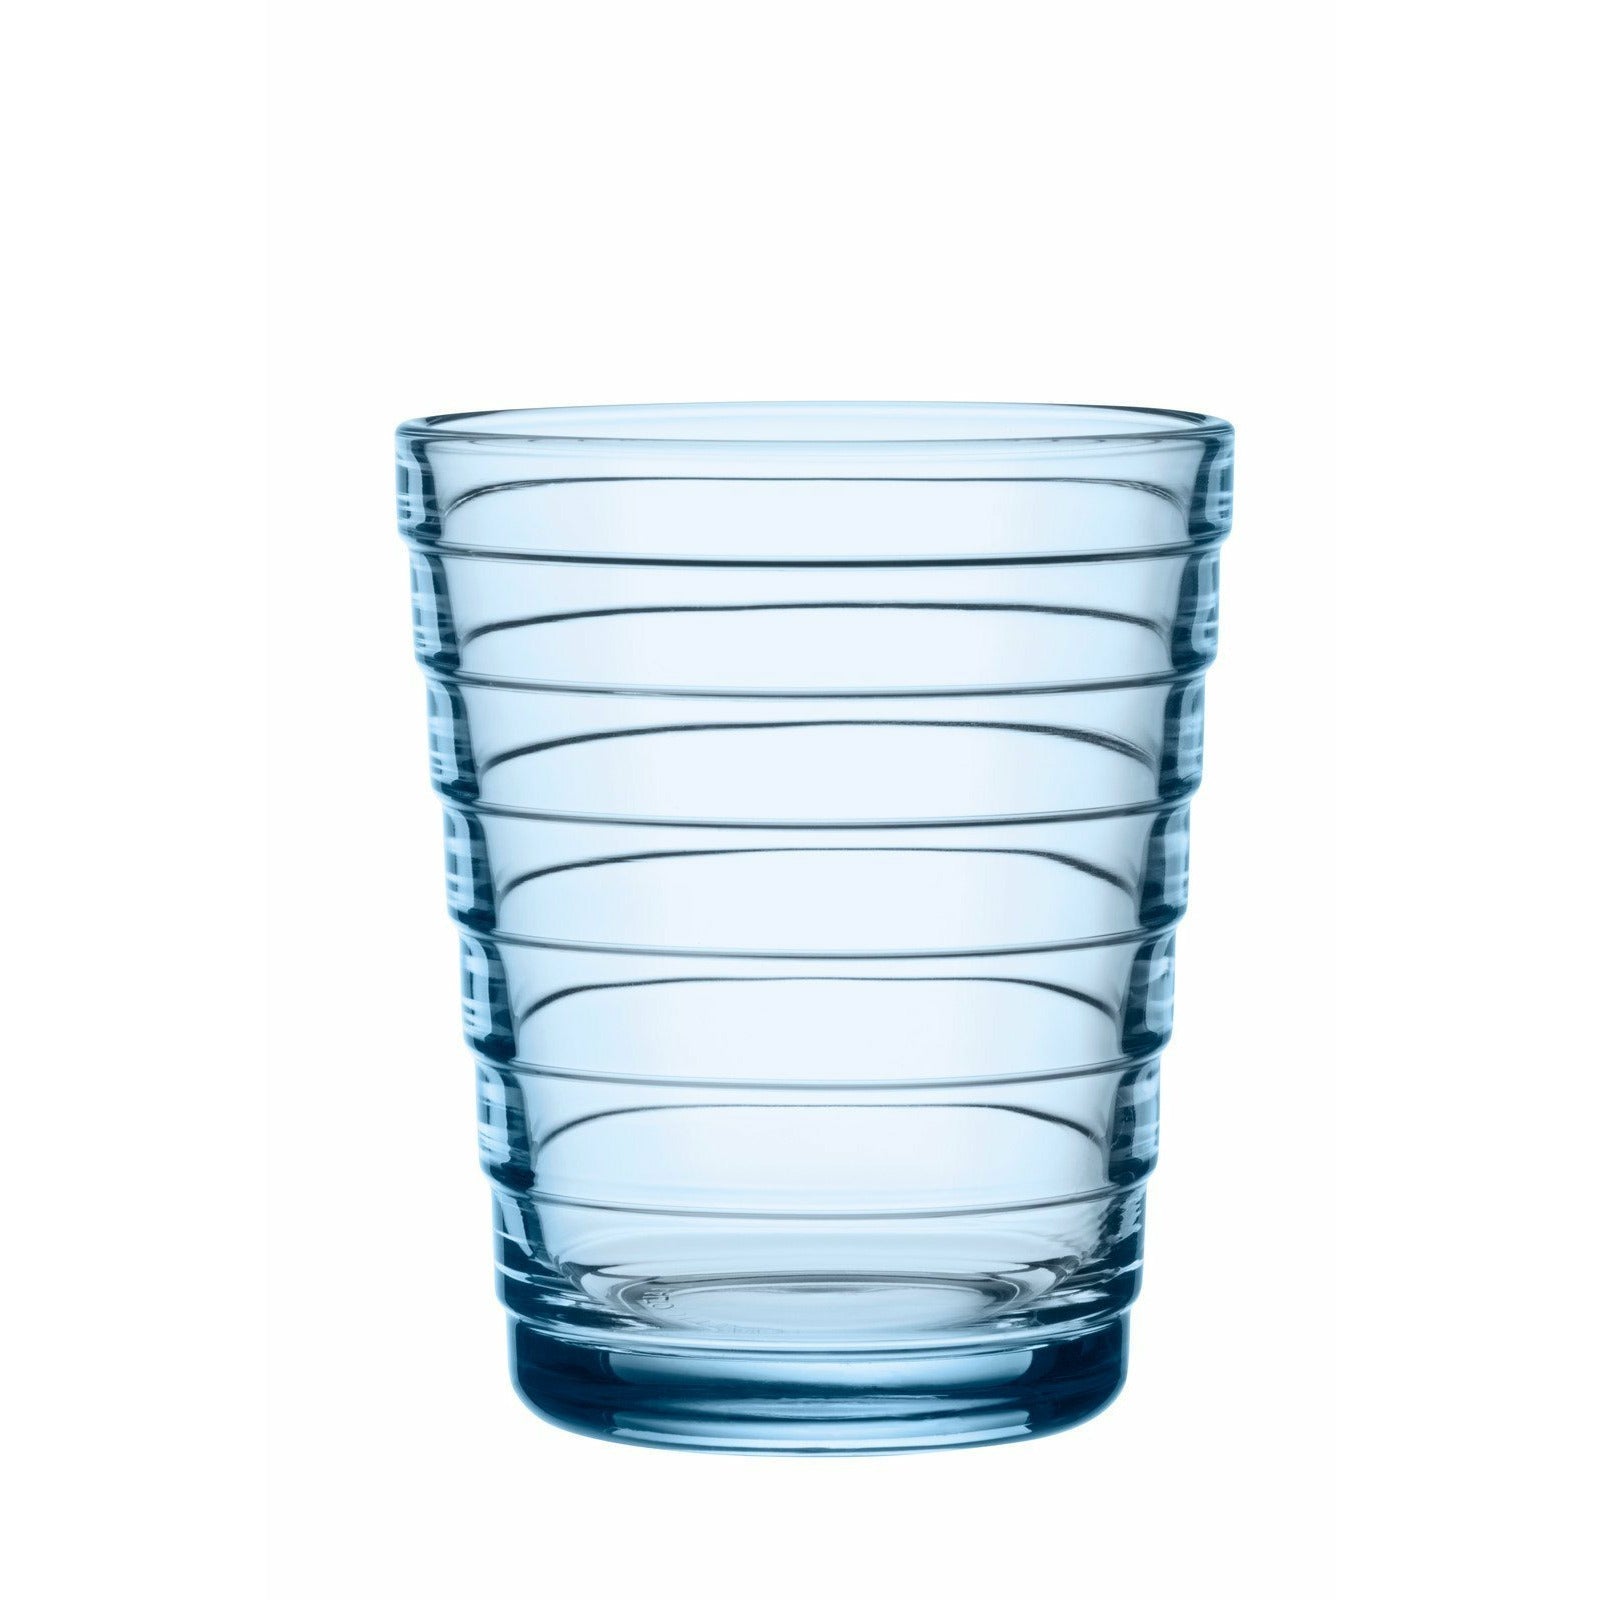 Iittala Aino Alto Trinkglas Aqua 22cl, 2Stk.-Wasserglas-Iittala-6411923662192-1026149-IIT-inwohn